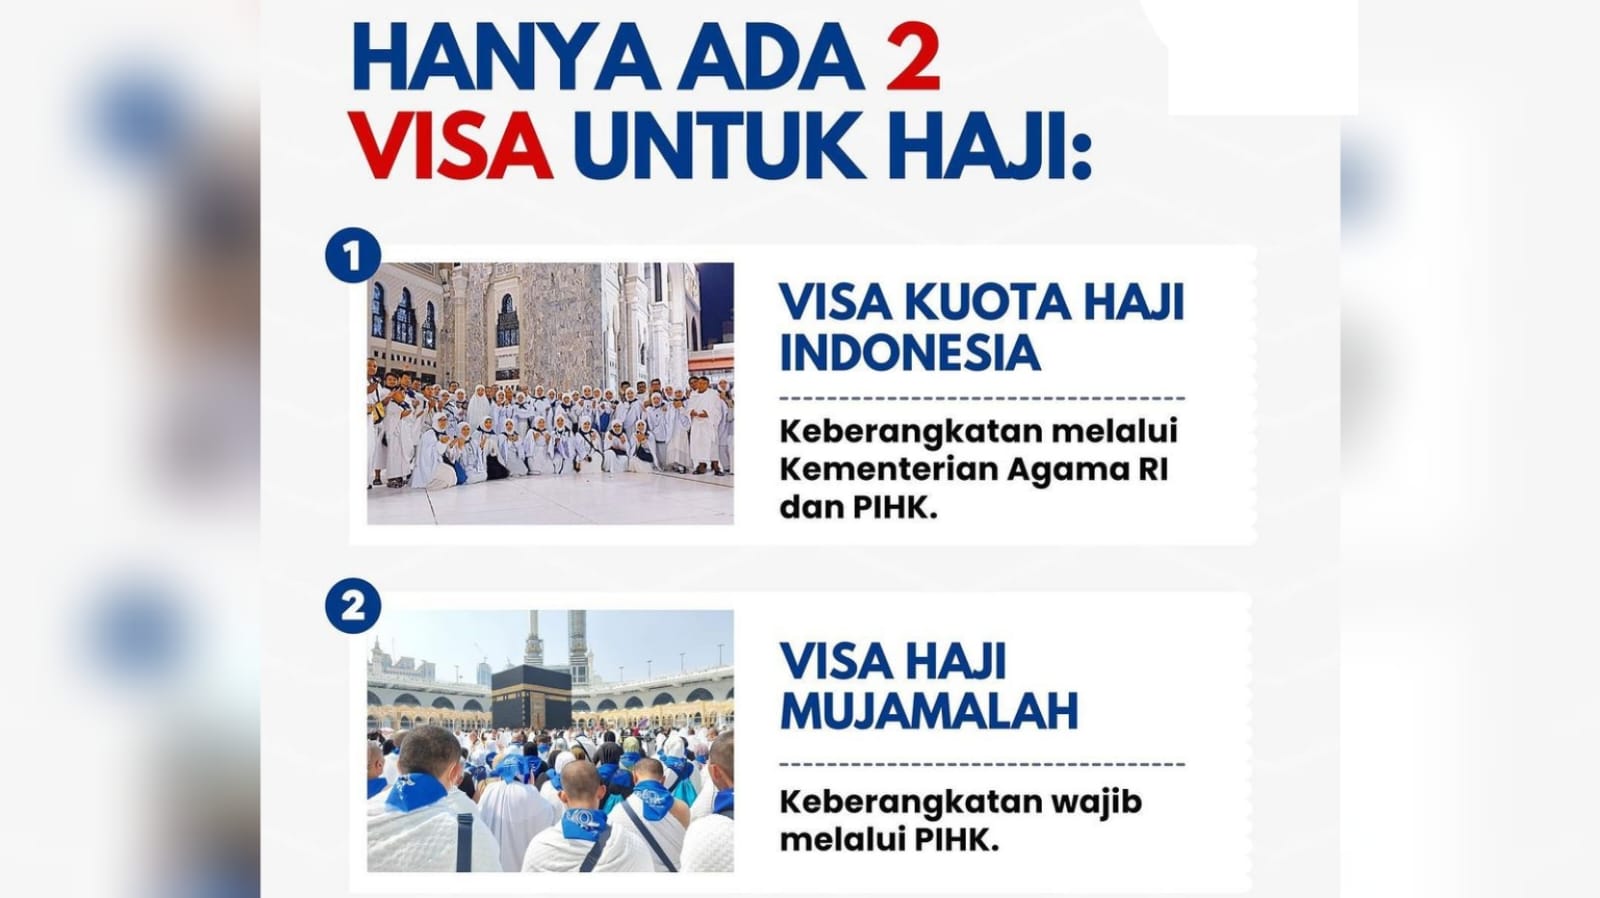 Waspada Jangan Tertipu Tawaran Haji Tanpa Antre Pakai Visa Lain Hanya Visa Haji yang Diakui